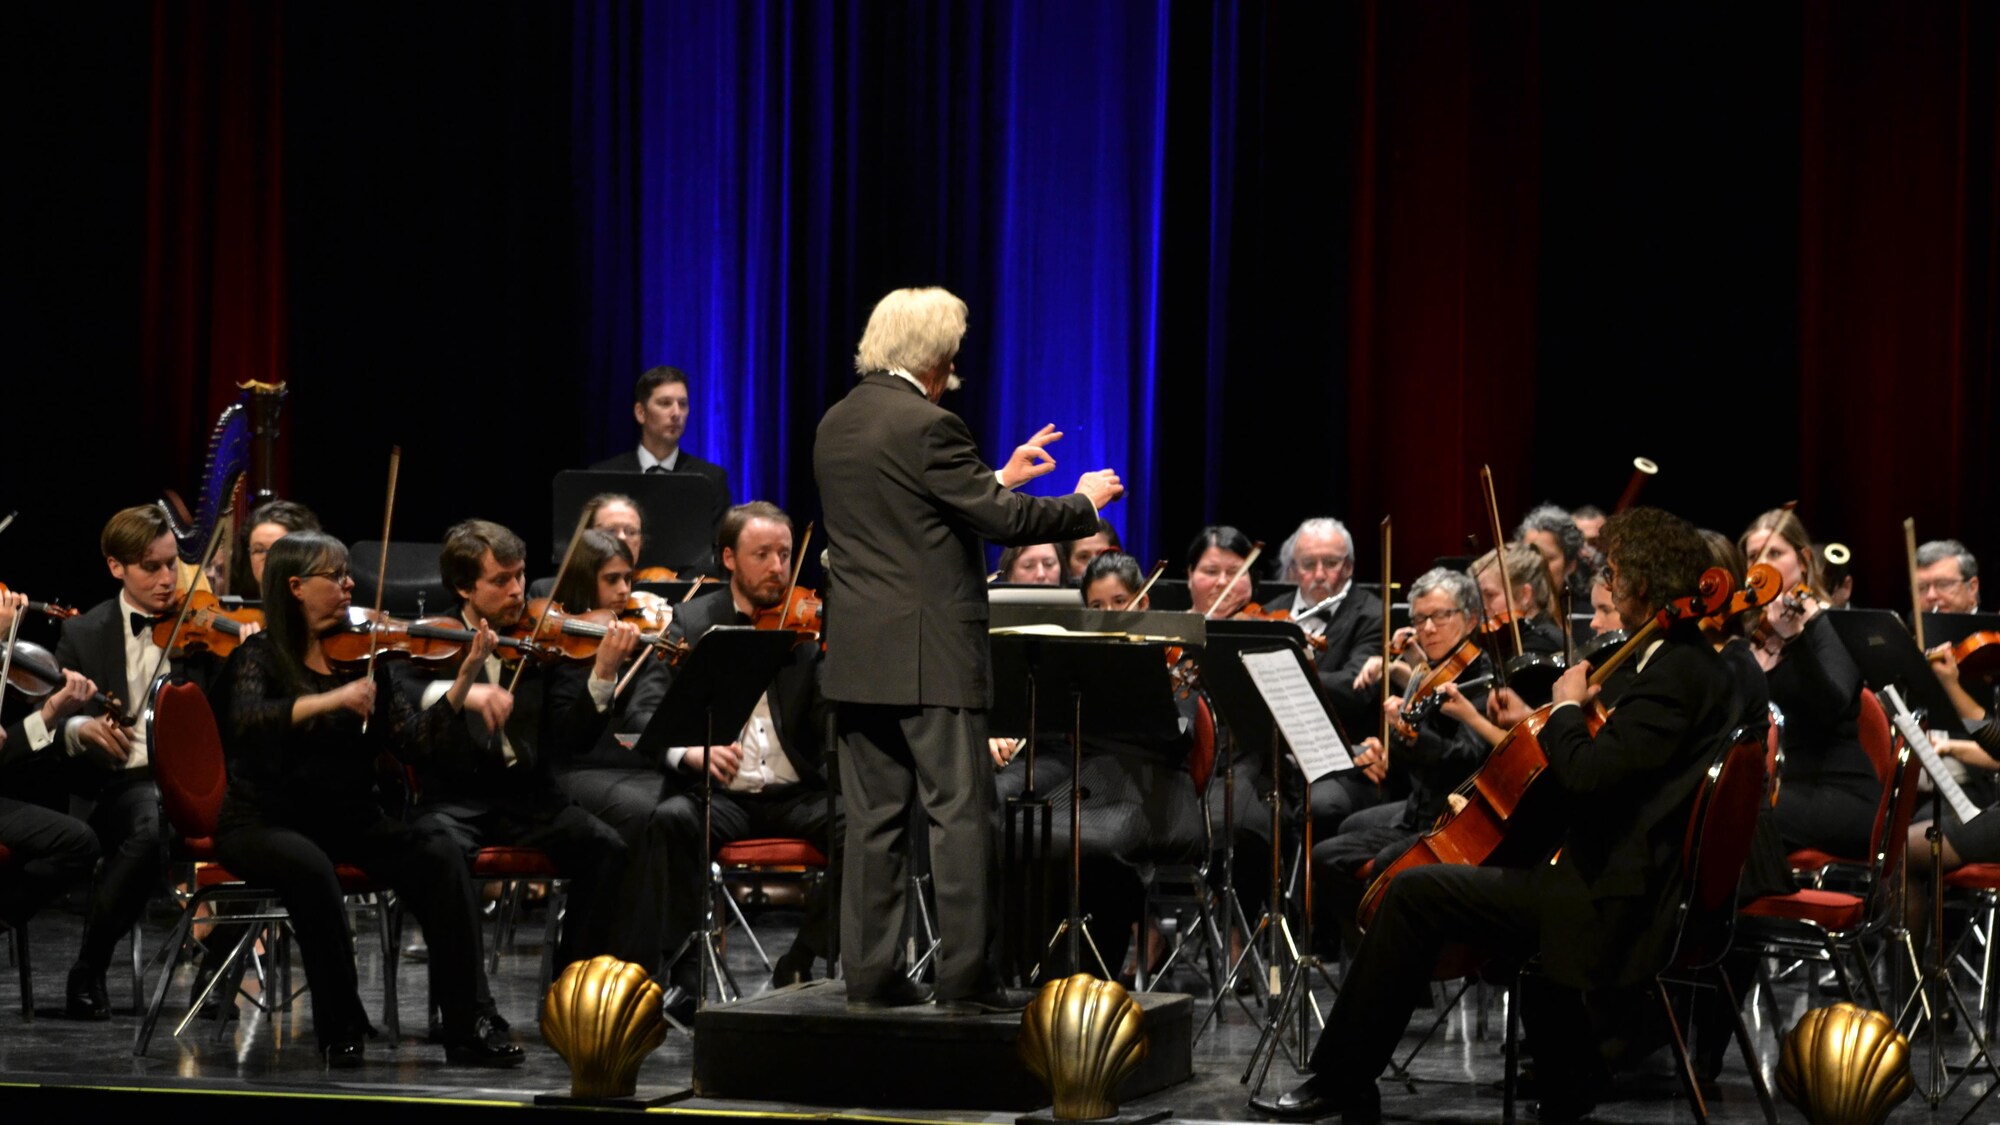 Jacques Marchand dirige les musiciens de l'Orchestre symphonique régional.